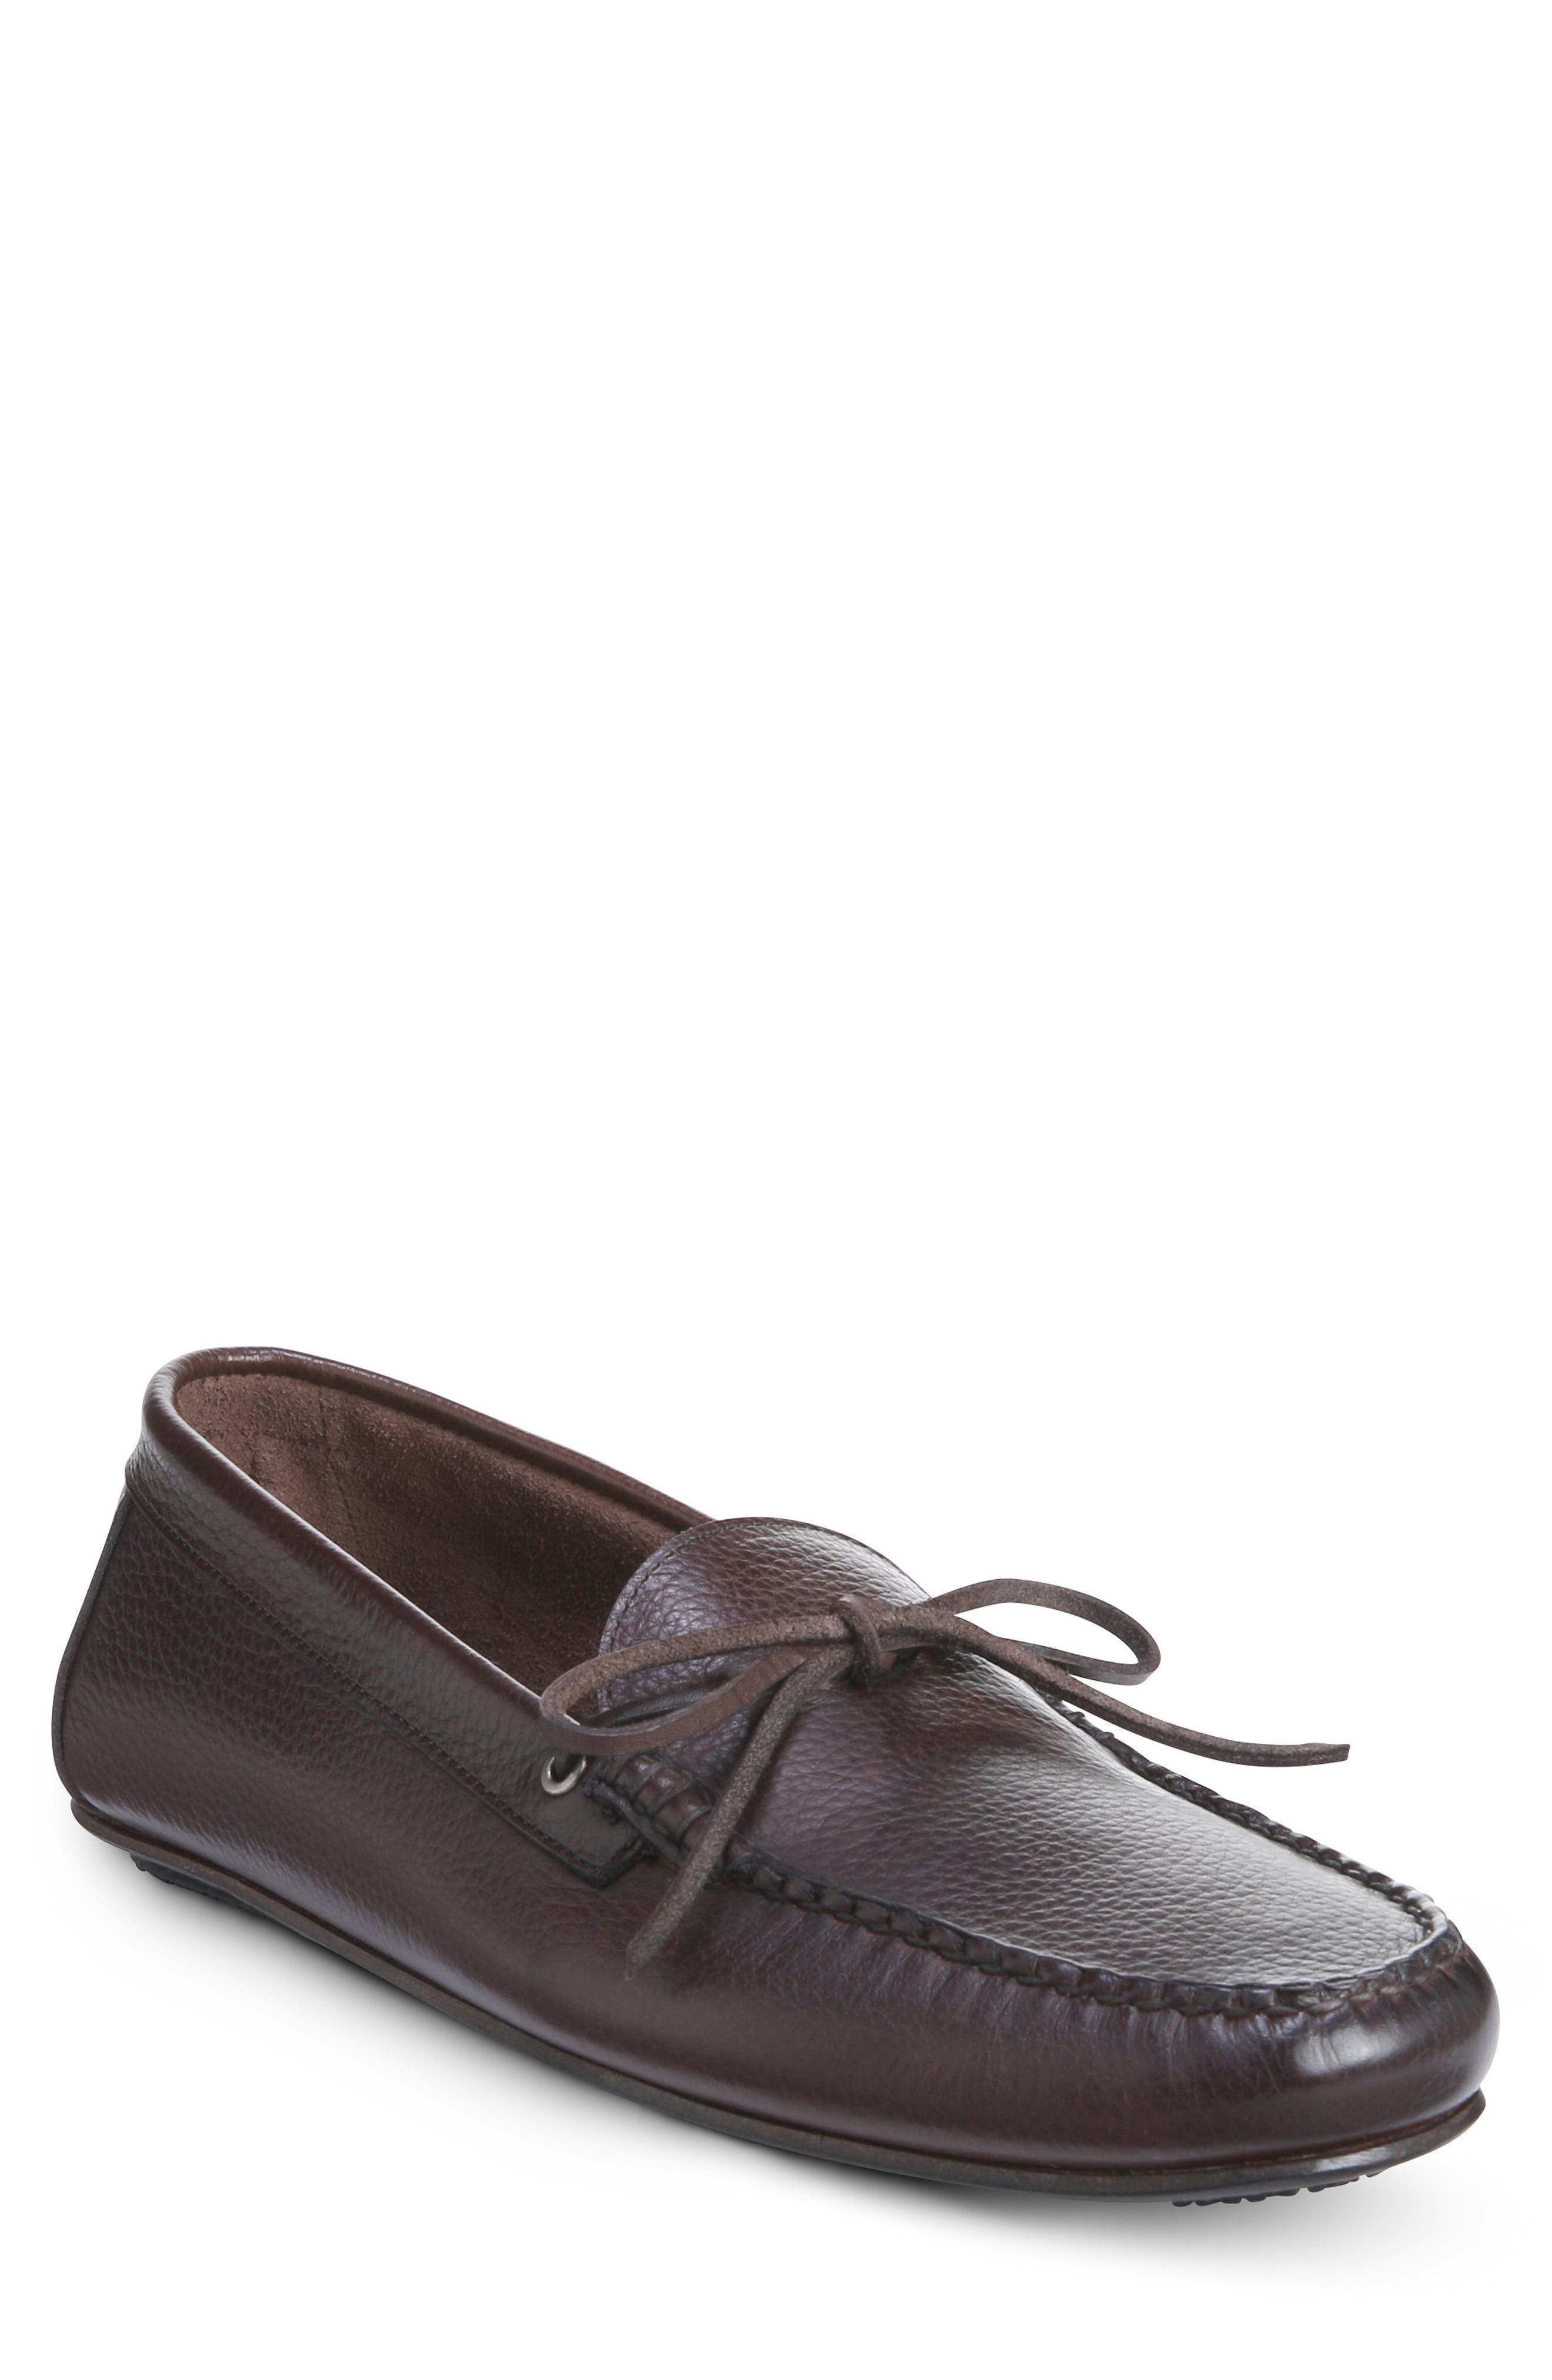 Men's Allen Edmonds Shoes | Nordstrom